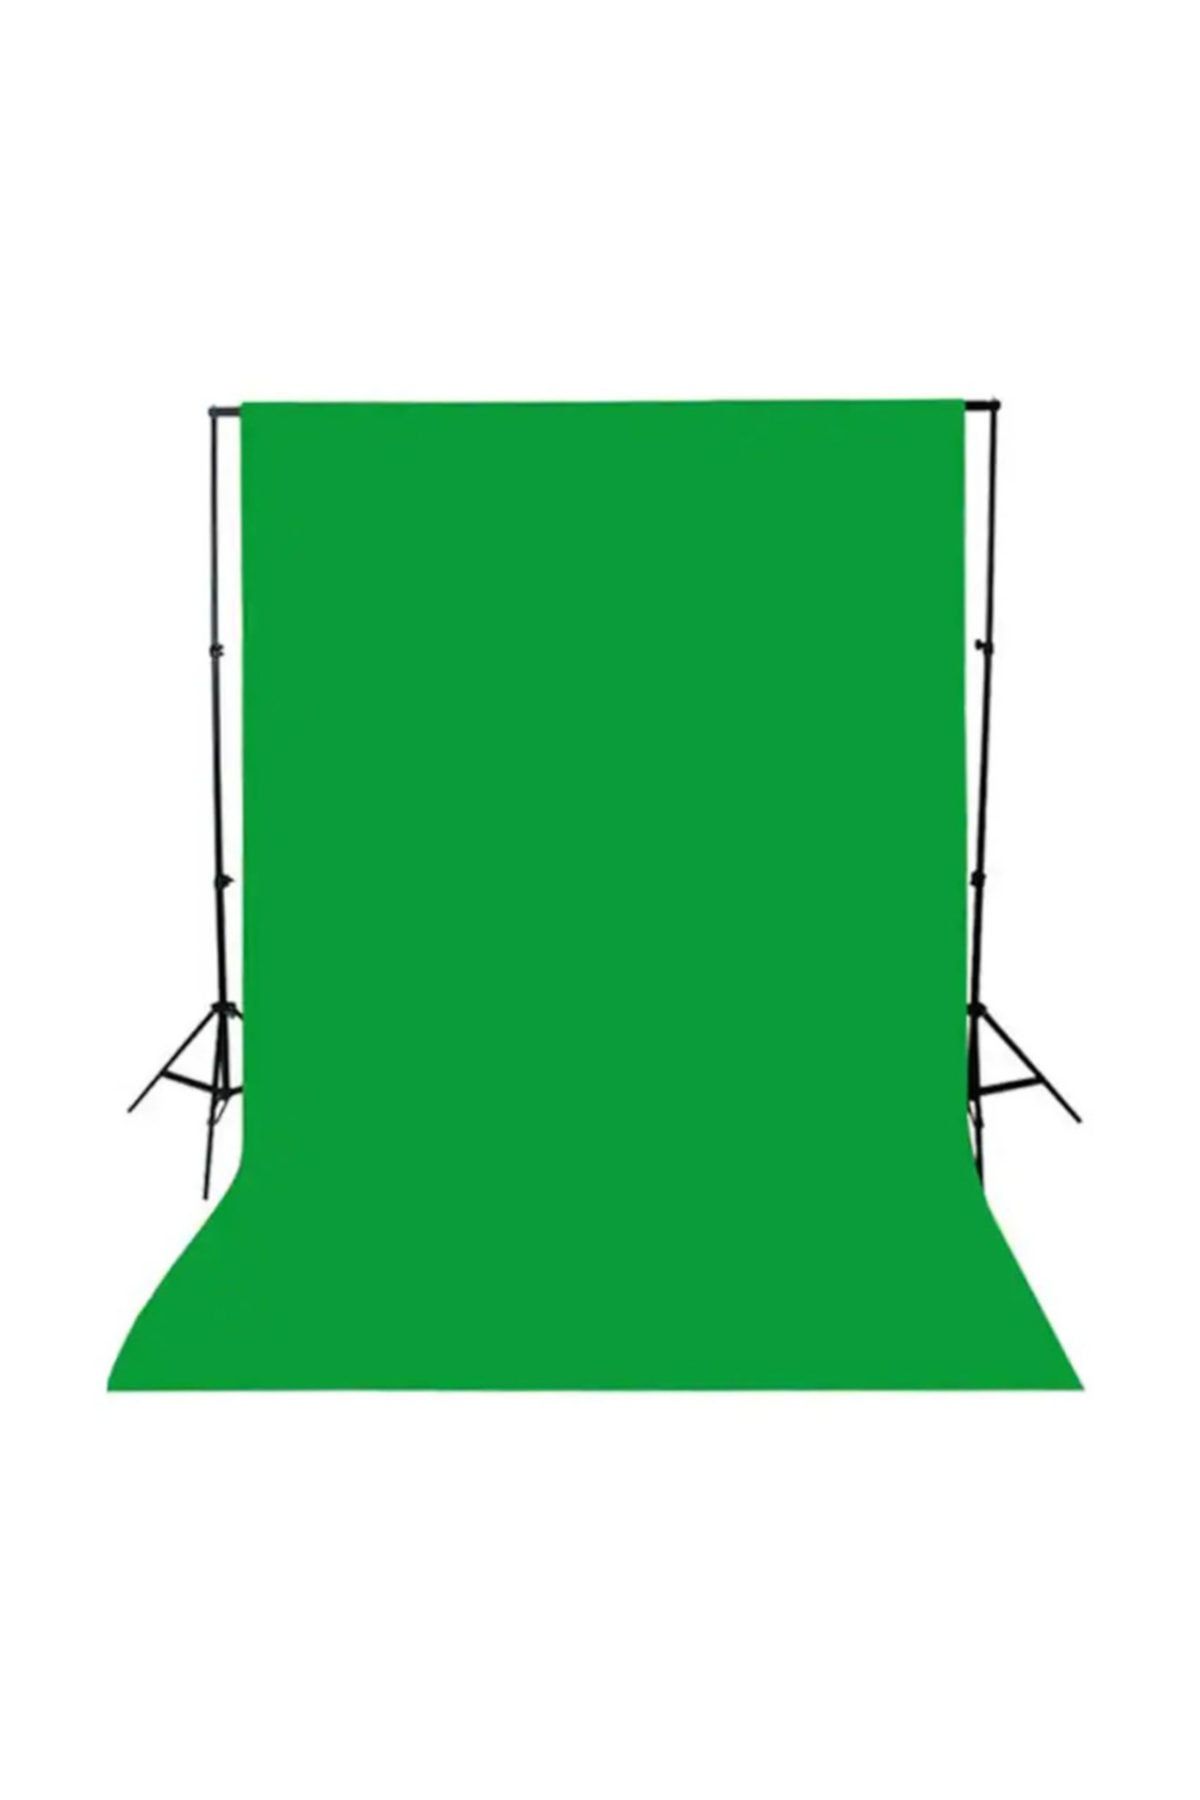 Deyatech Greenbox Chromakey- Green Screen- Greenbox- Yeşil Fon Perde